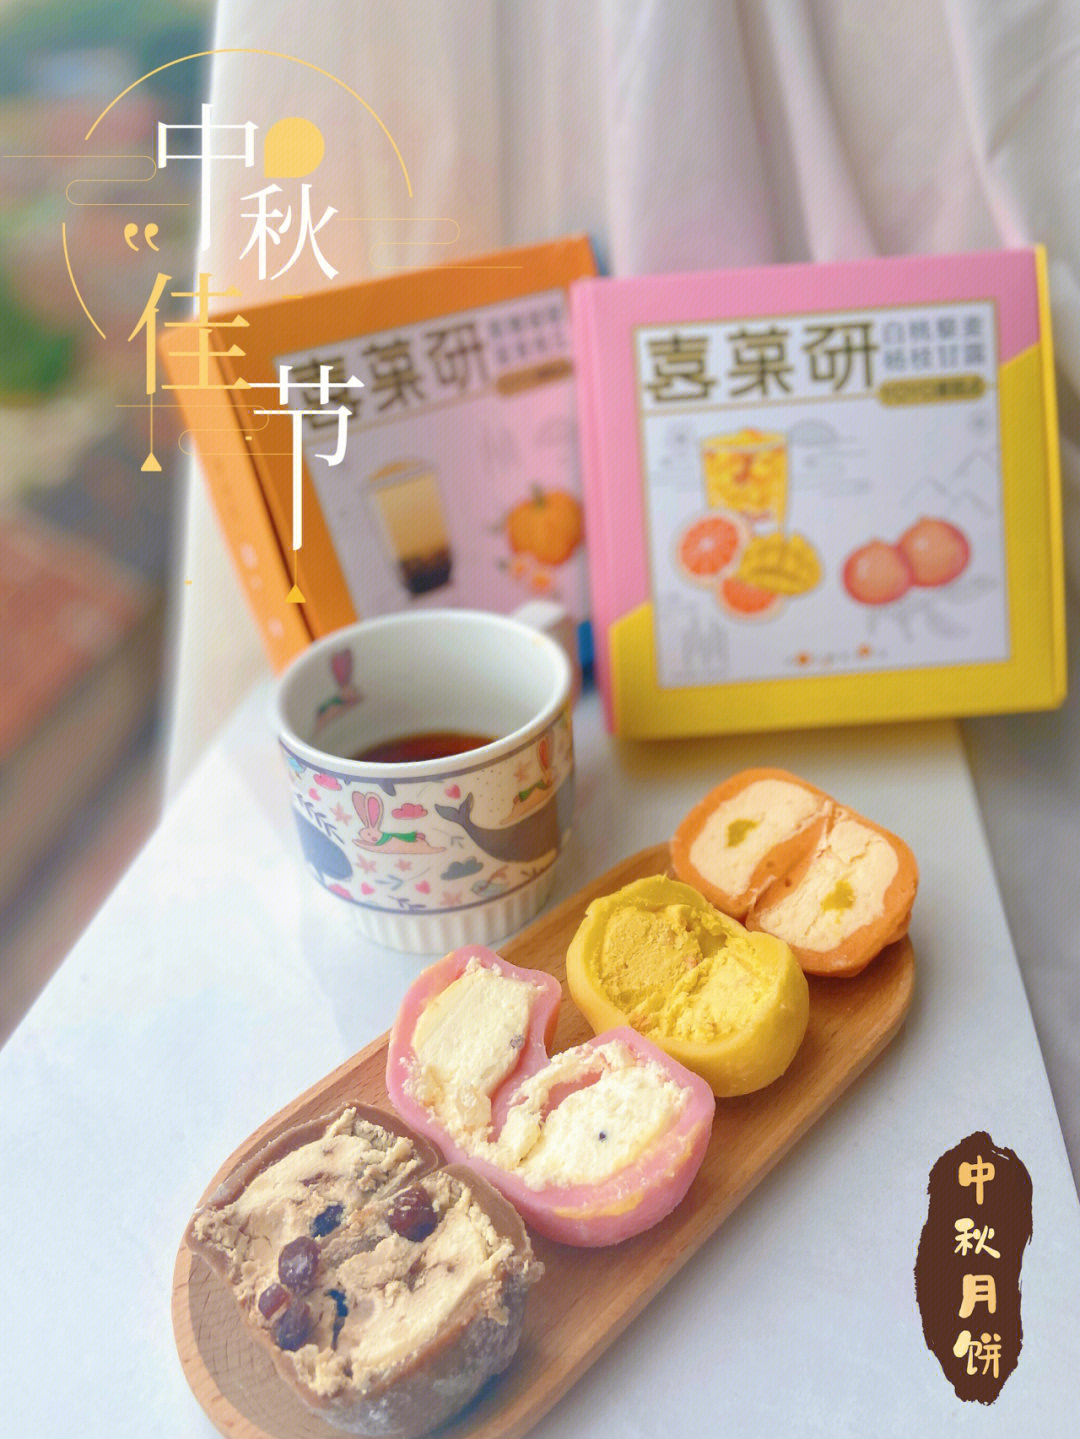 中秋节下午茶分享喜菓研冰皮月饼